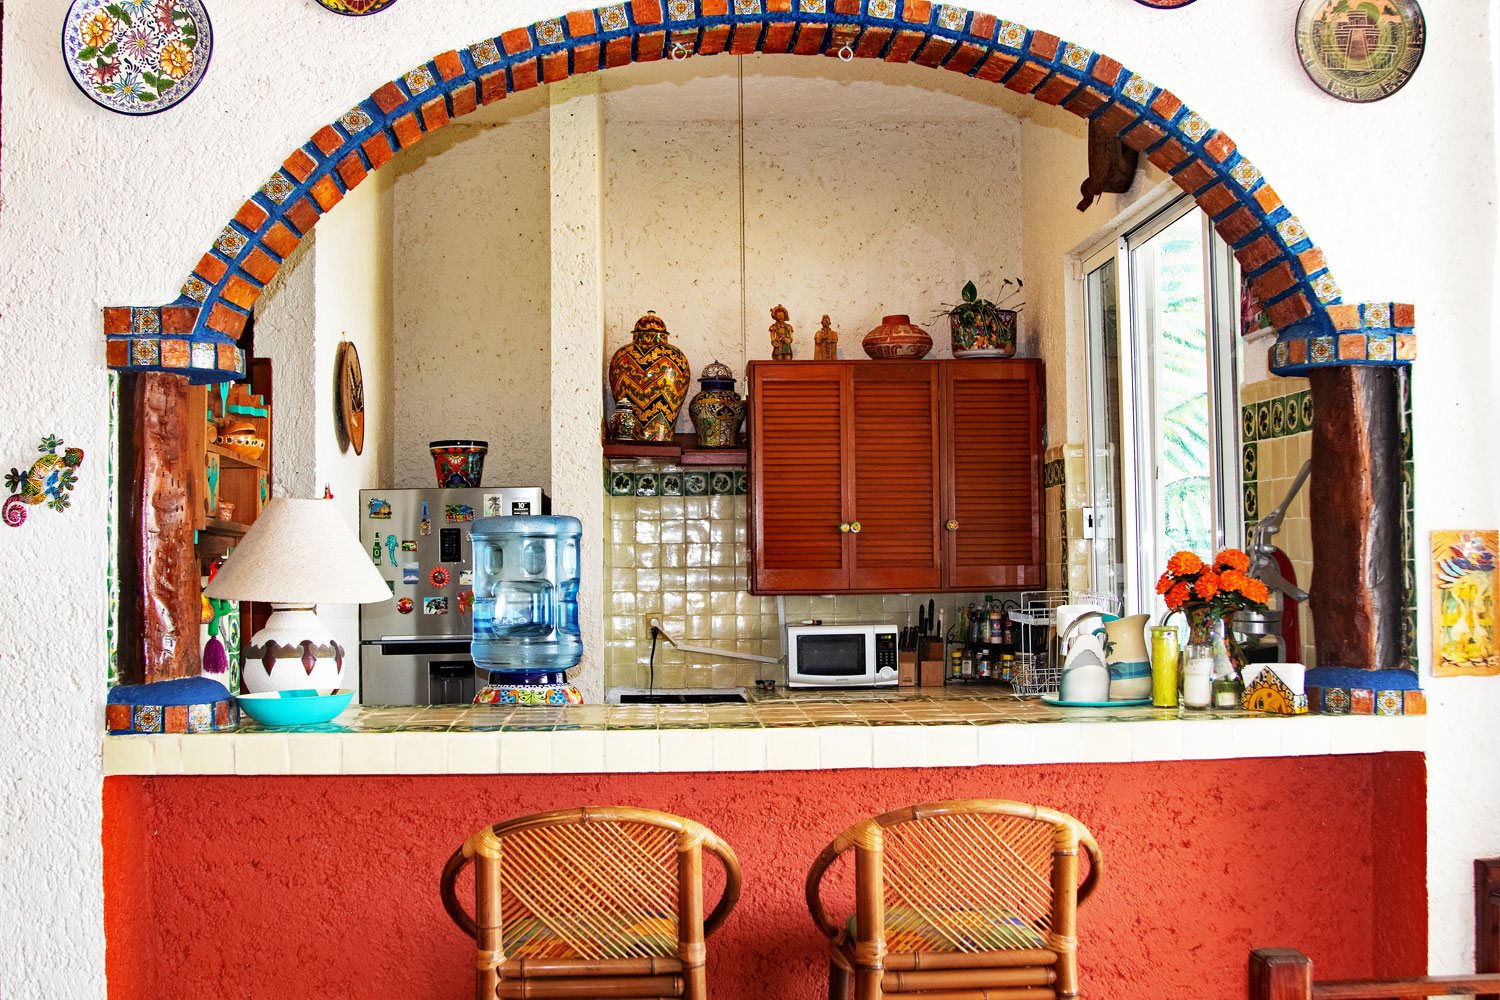 LaritiaMar, La Sirena 2, It's Beautiful Well Equipped Hacienda Style Kitchen